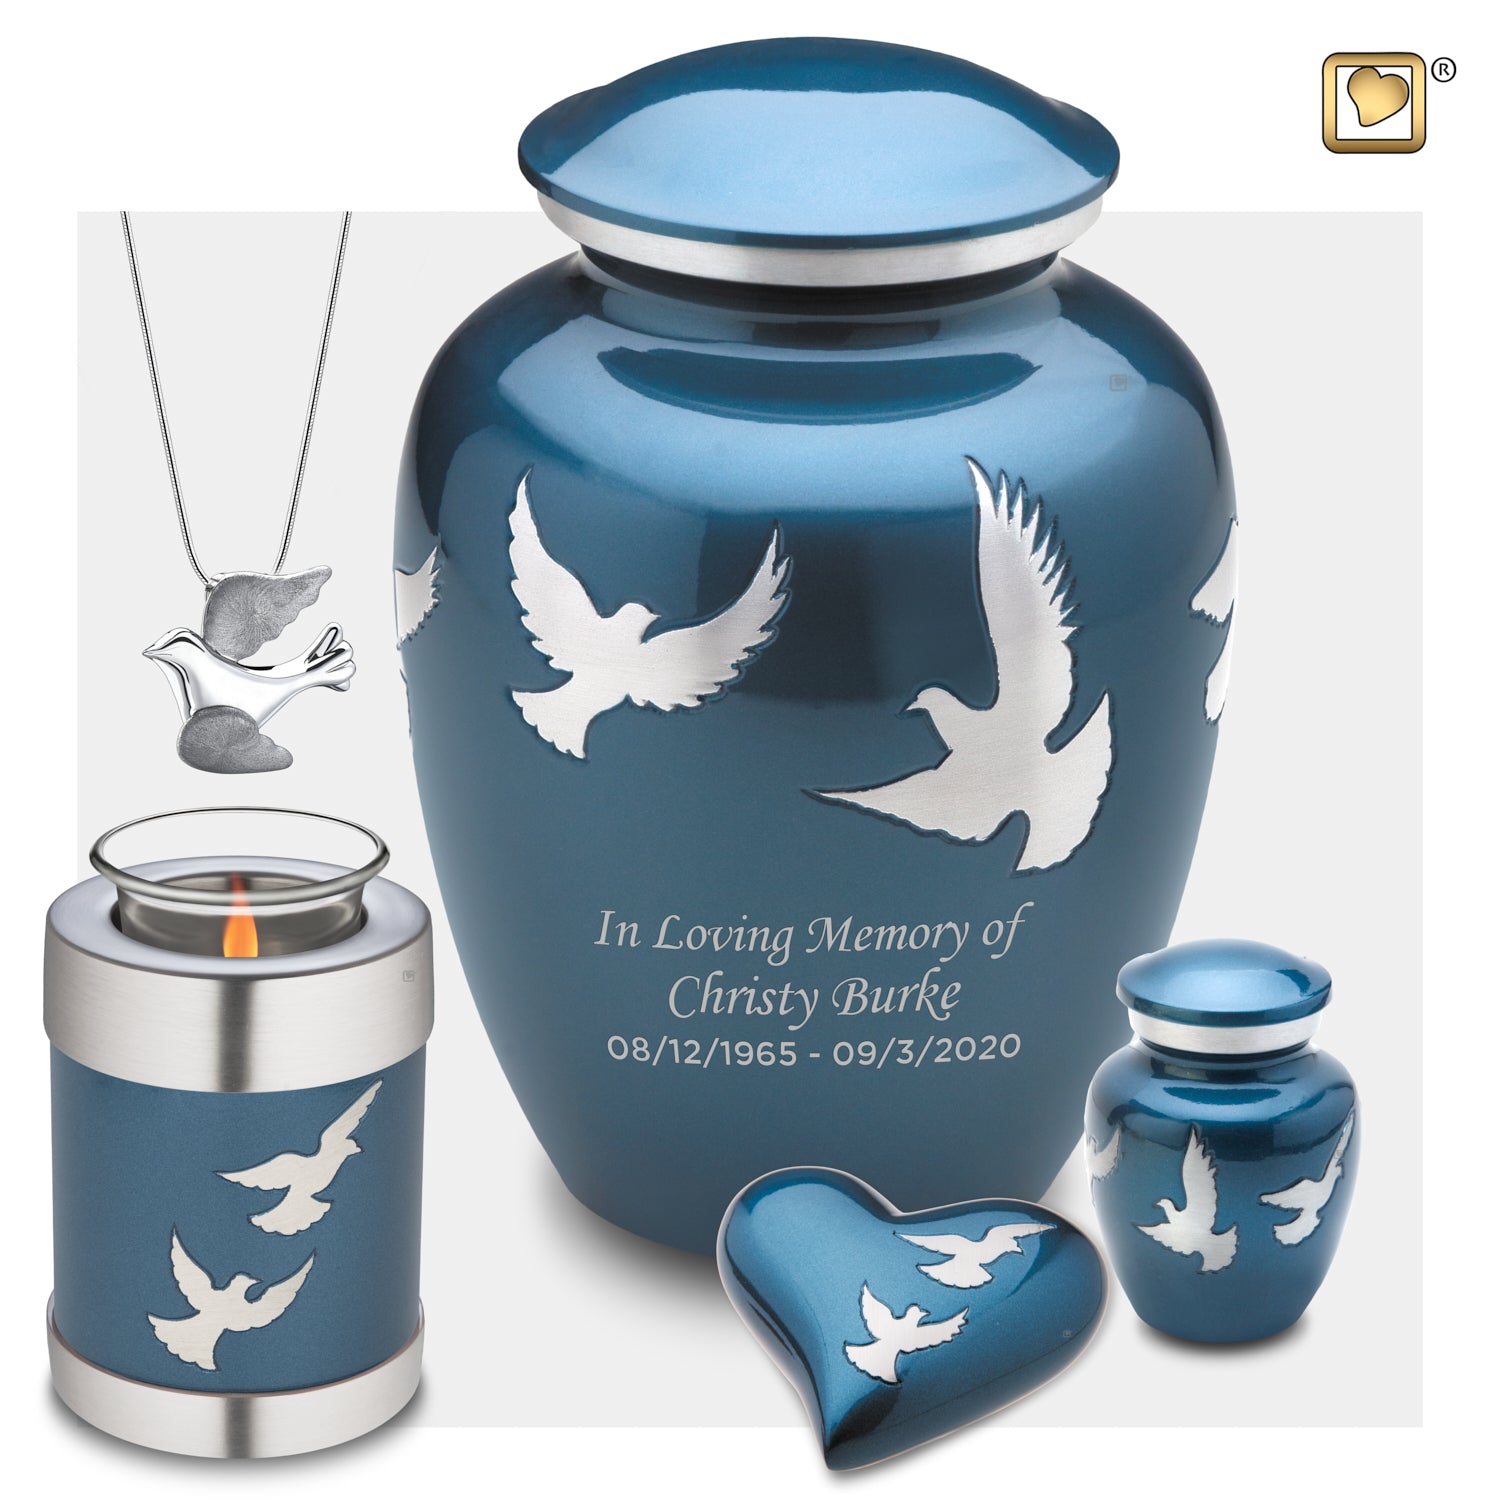 Keepsake Flying Doves Cremation Urn